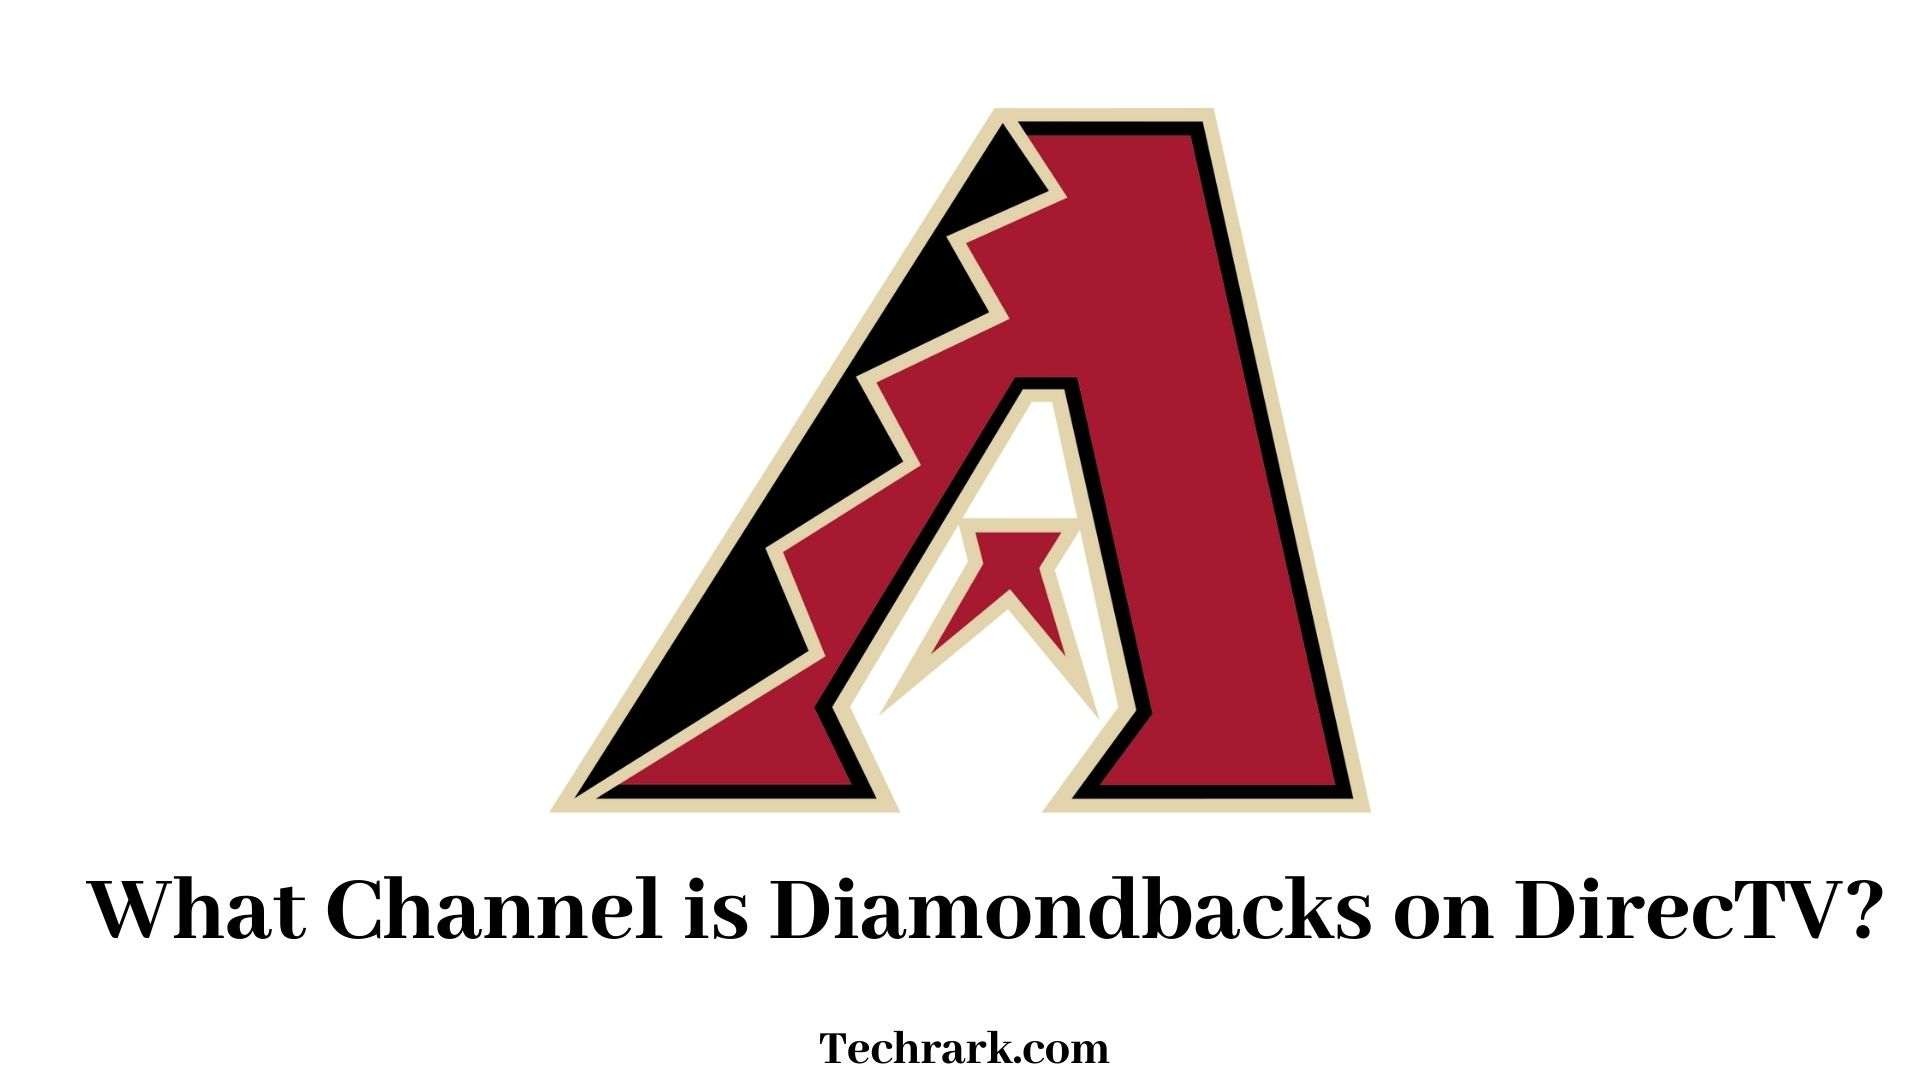 Diamondbacks on DirecTV